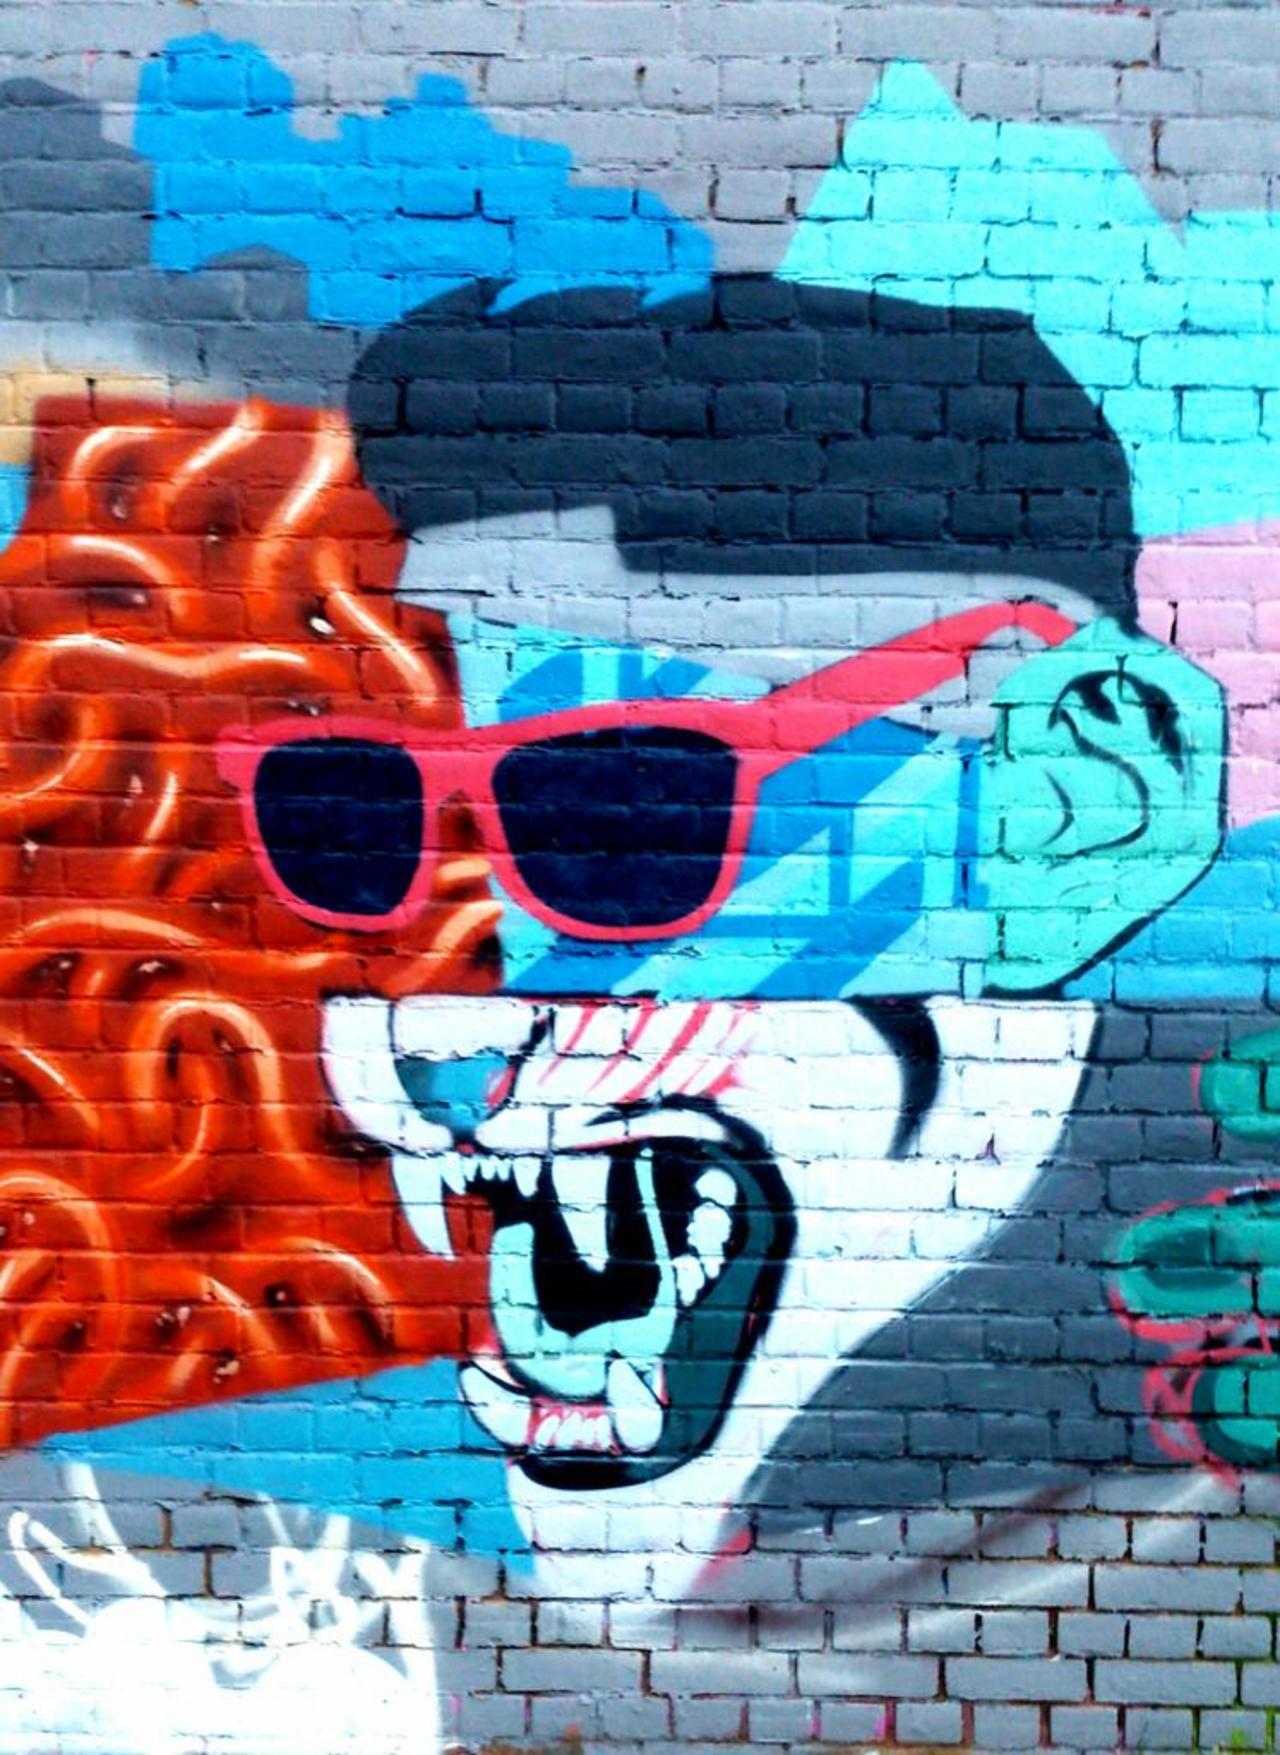 Cool #abstractart #streetart #graffiti #graff  
East London http://t.co/achzAKmZzl